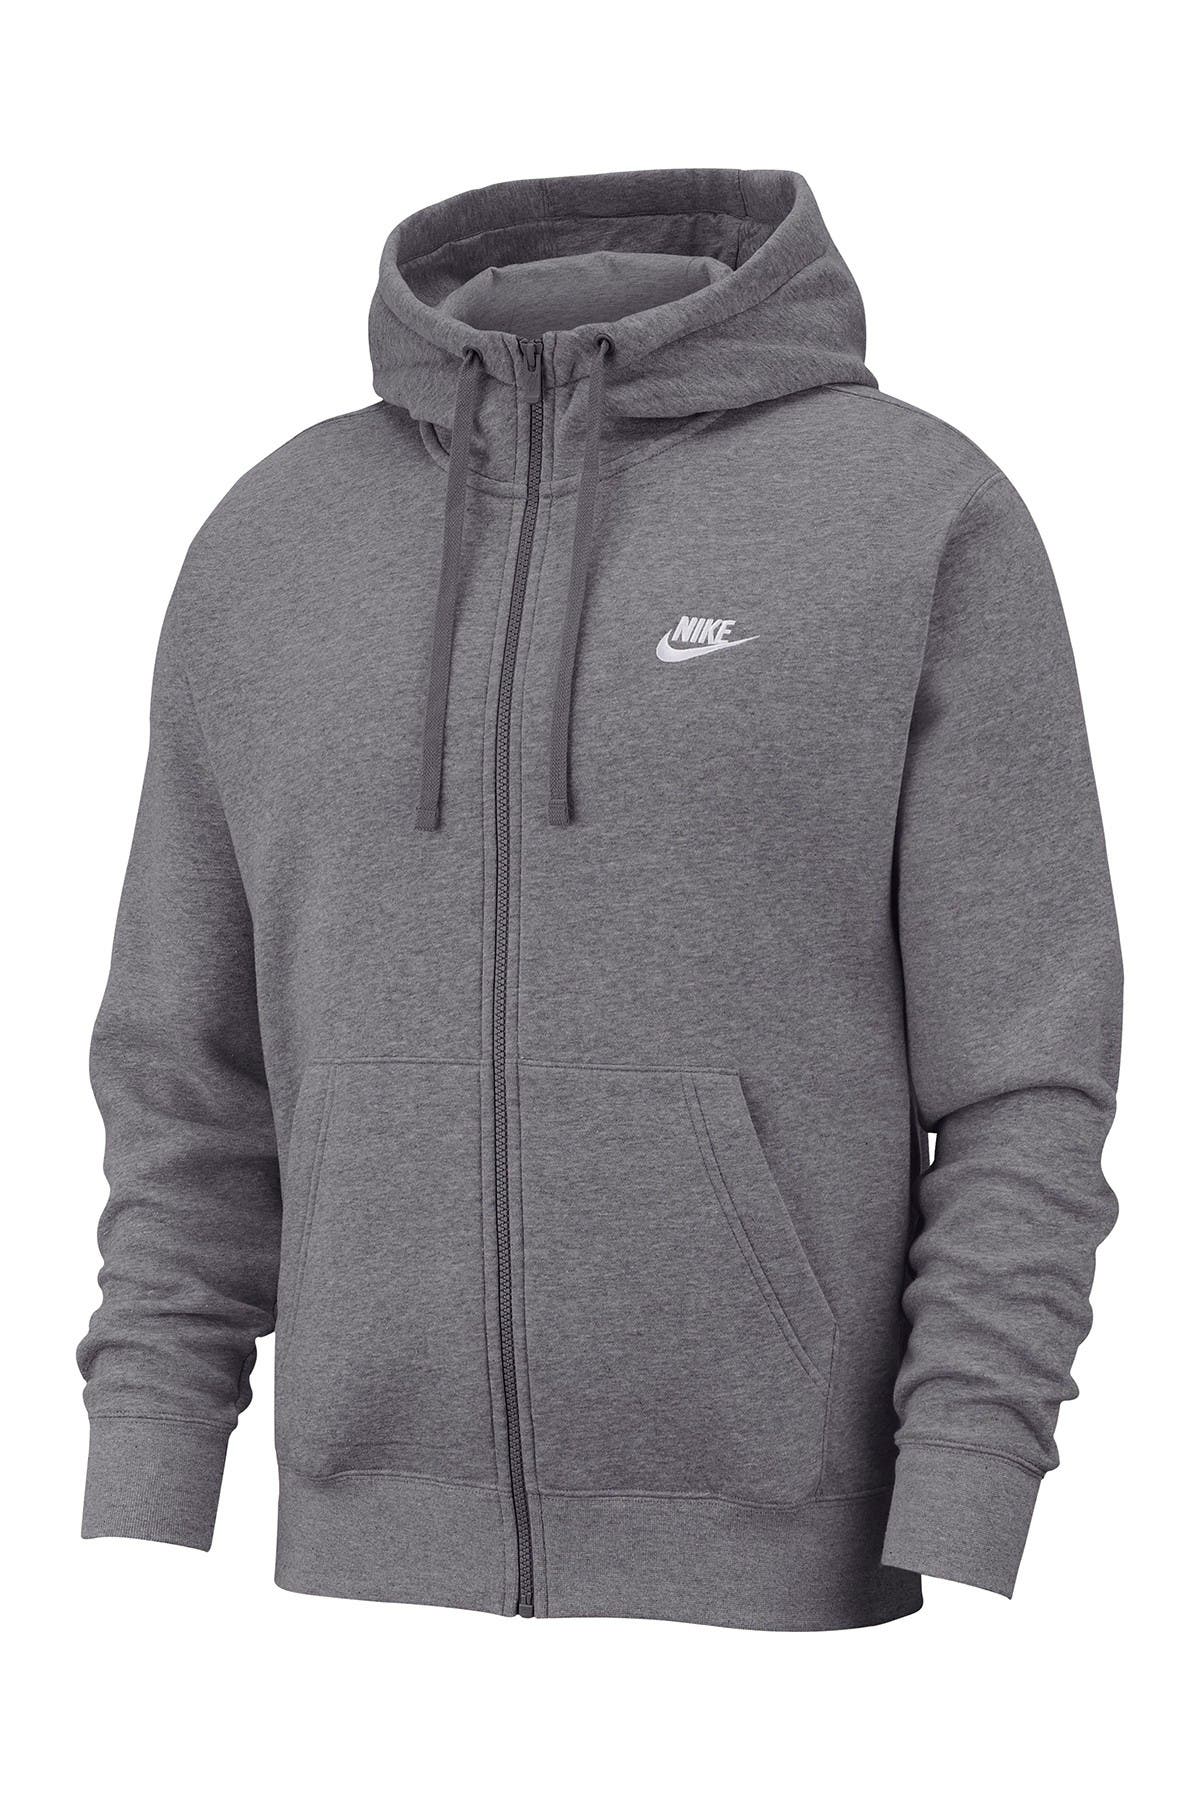 Nike Men's Sweatshirts \u0026 Hoodies 